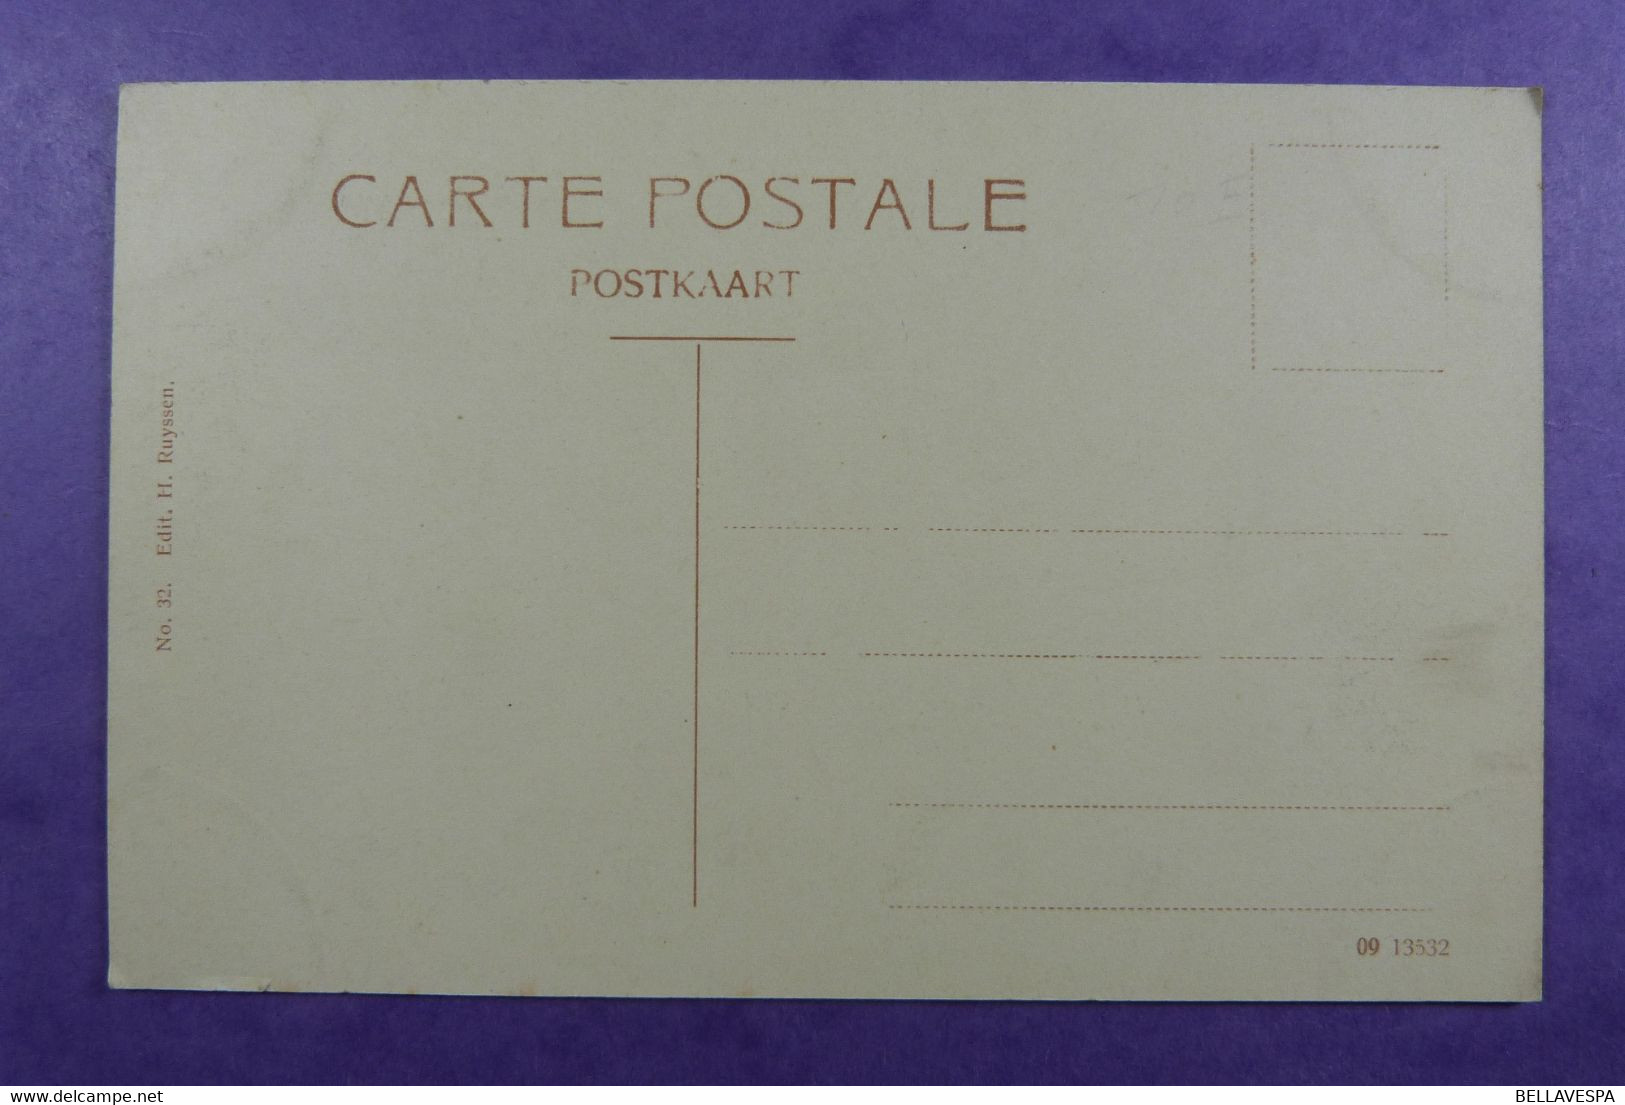 De Panne. Lot  x 11 postkaarten Estaminet -Hotel des Bains & Grand Place -Epicerie Chez Lou  Bad Hotel Tram Ambulant